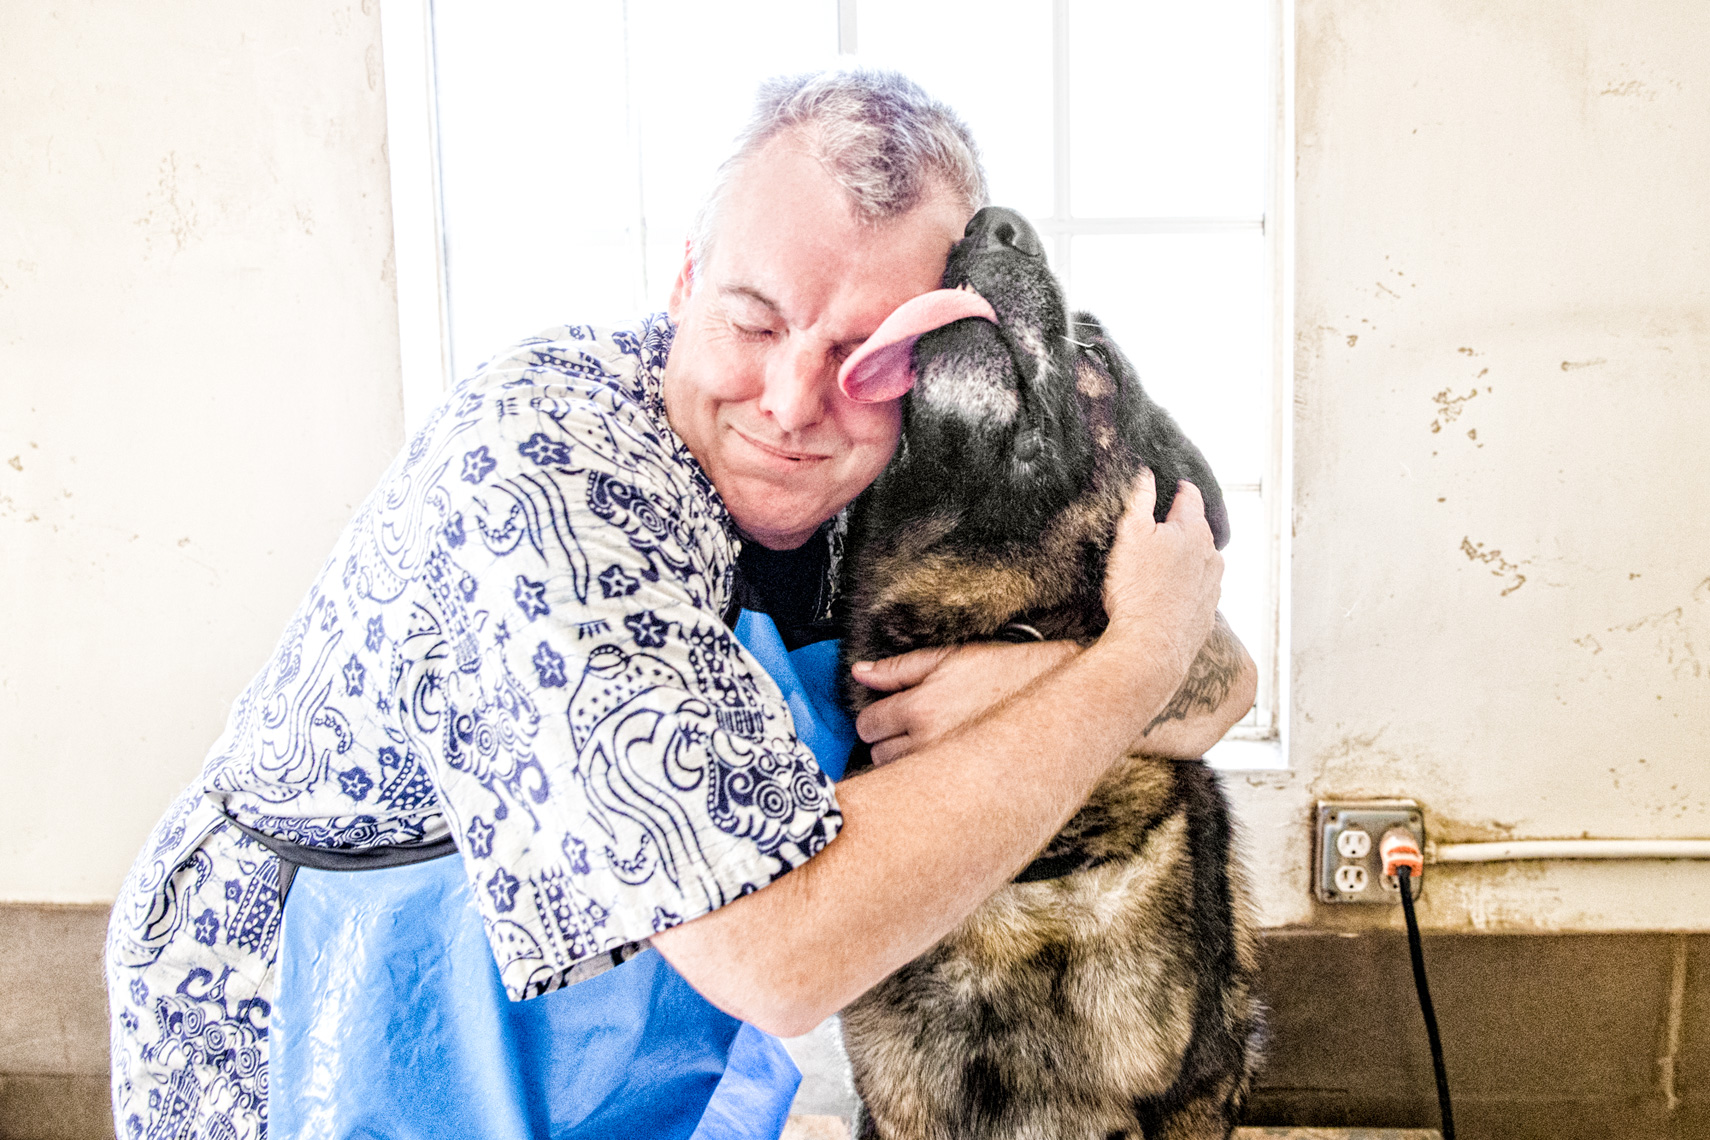 Los Angeles Dog Photography, Michael Brian, Santa Barbara Police K-9 Brag gives love, kisses after bath